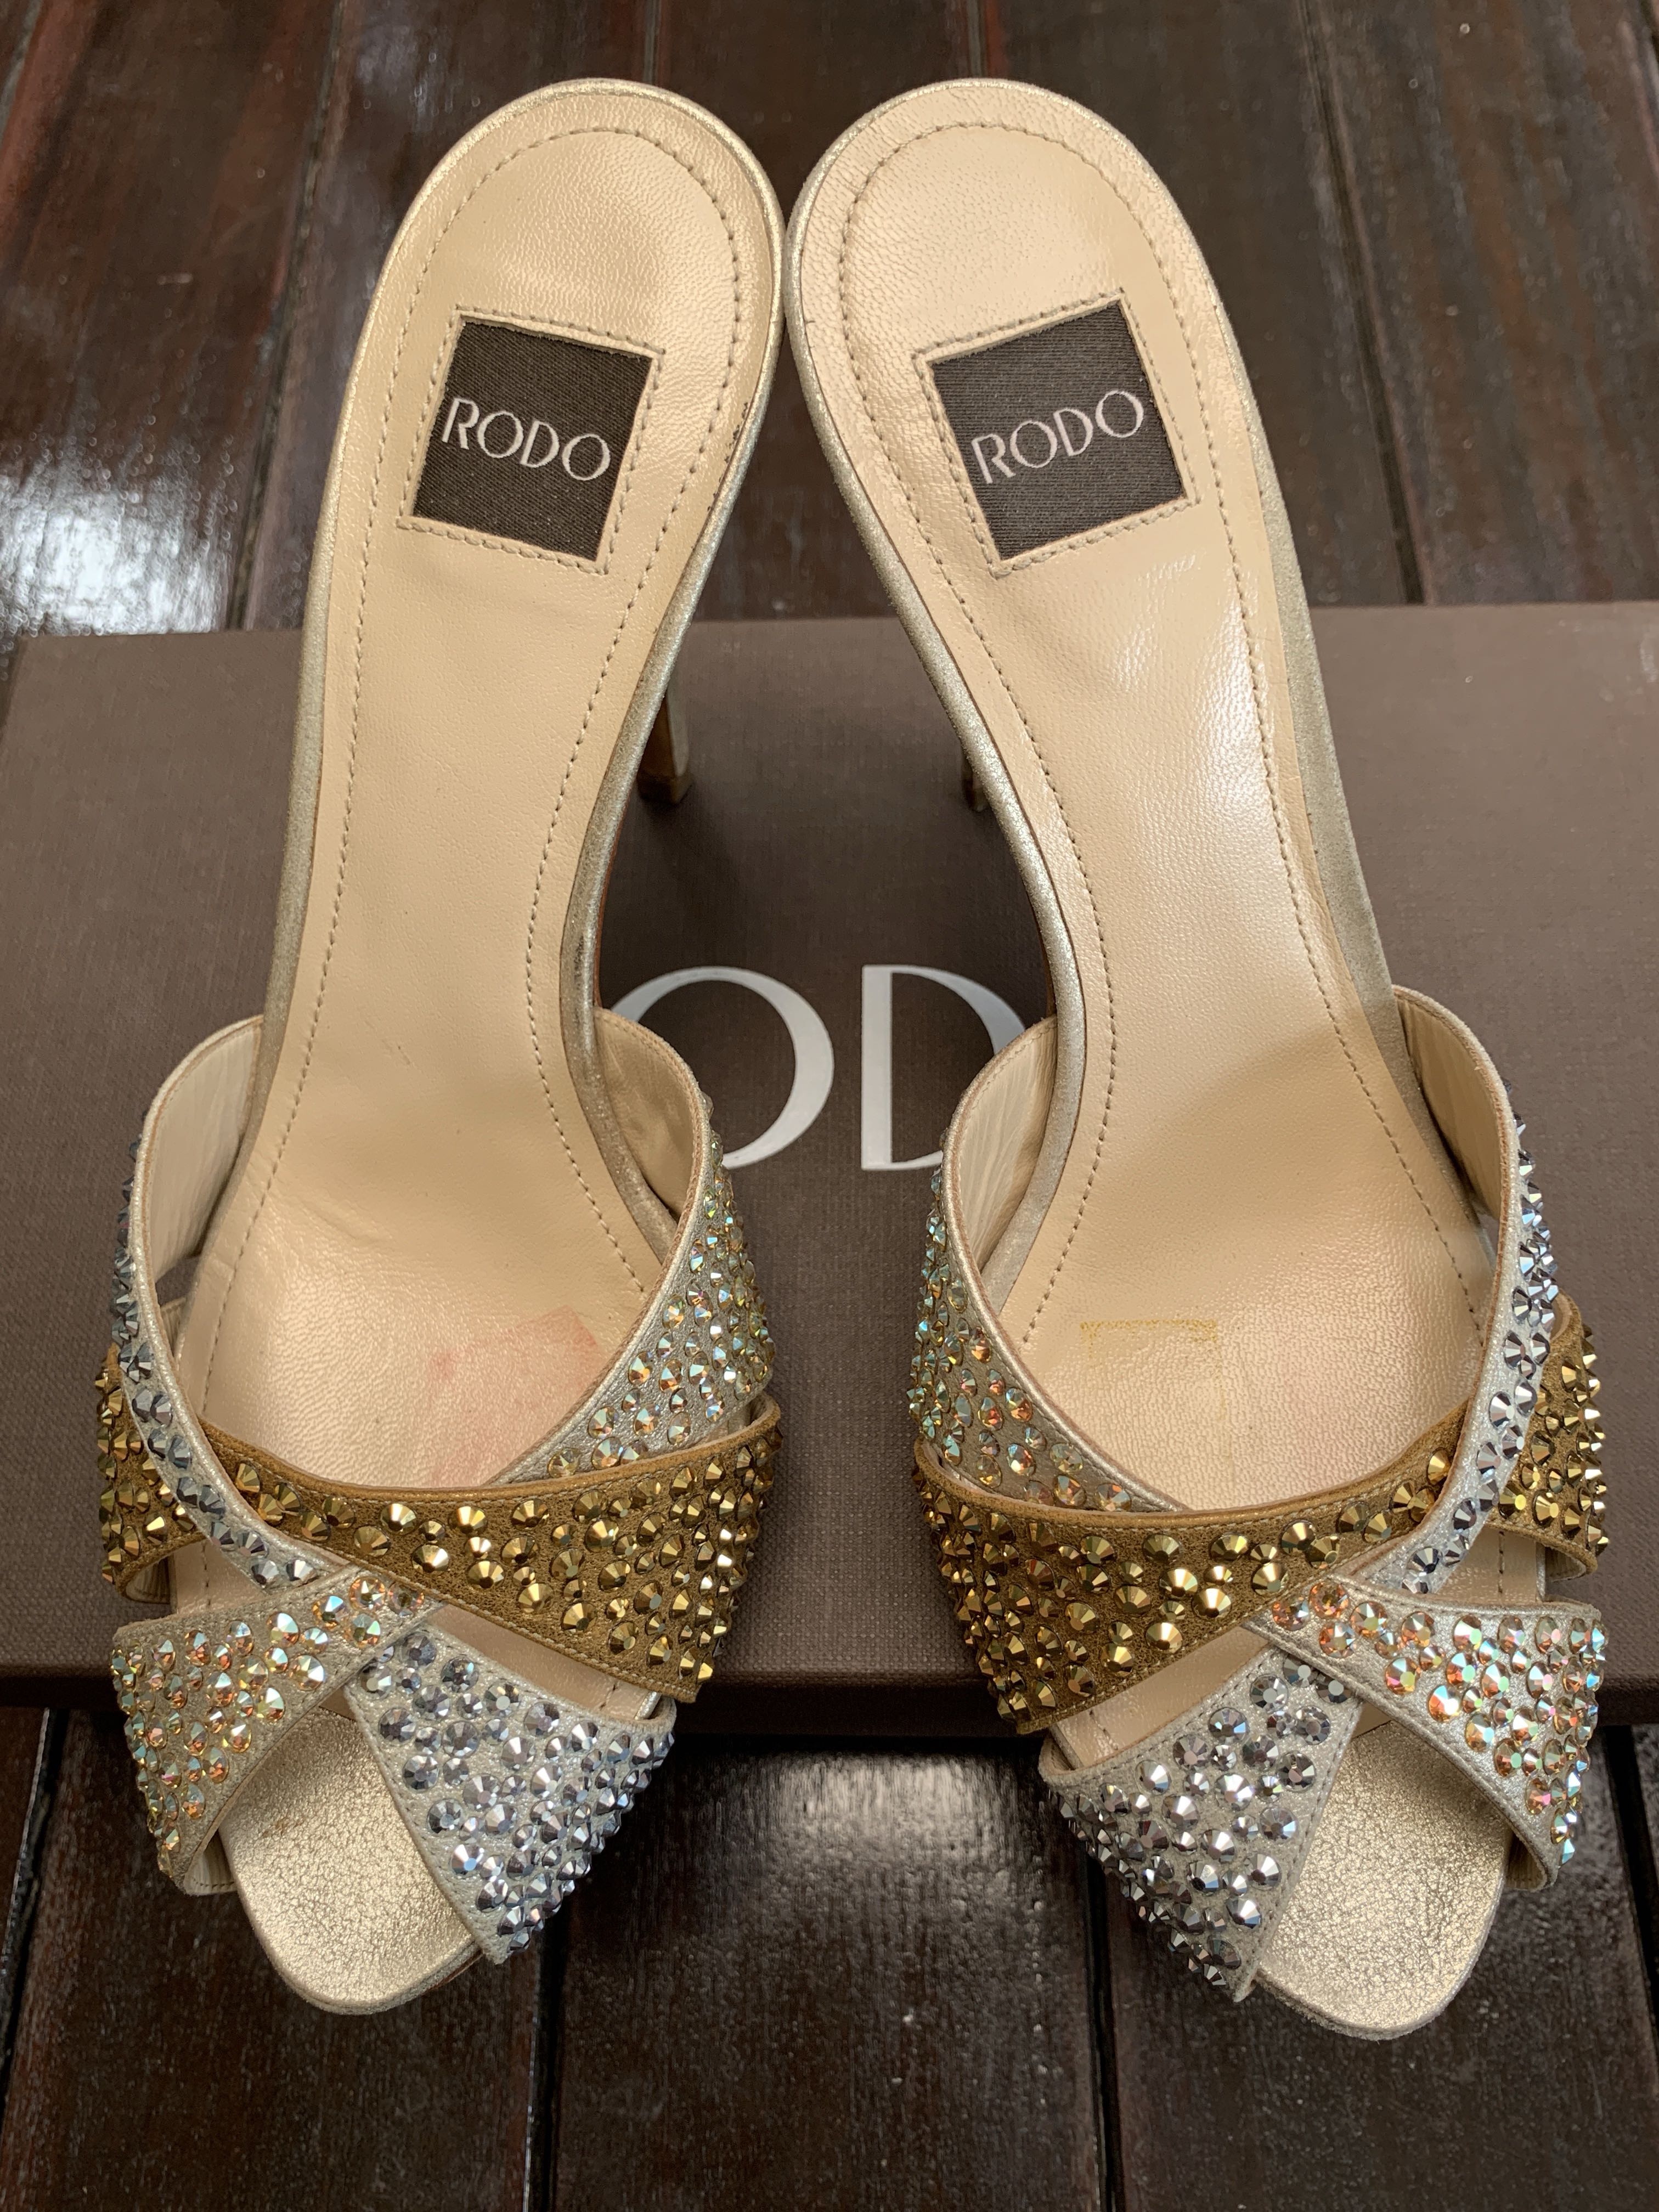 RODO Swarovski Crystal Heels, Luxury, Sneakers & Footwear on Carousell